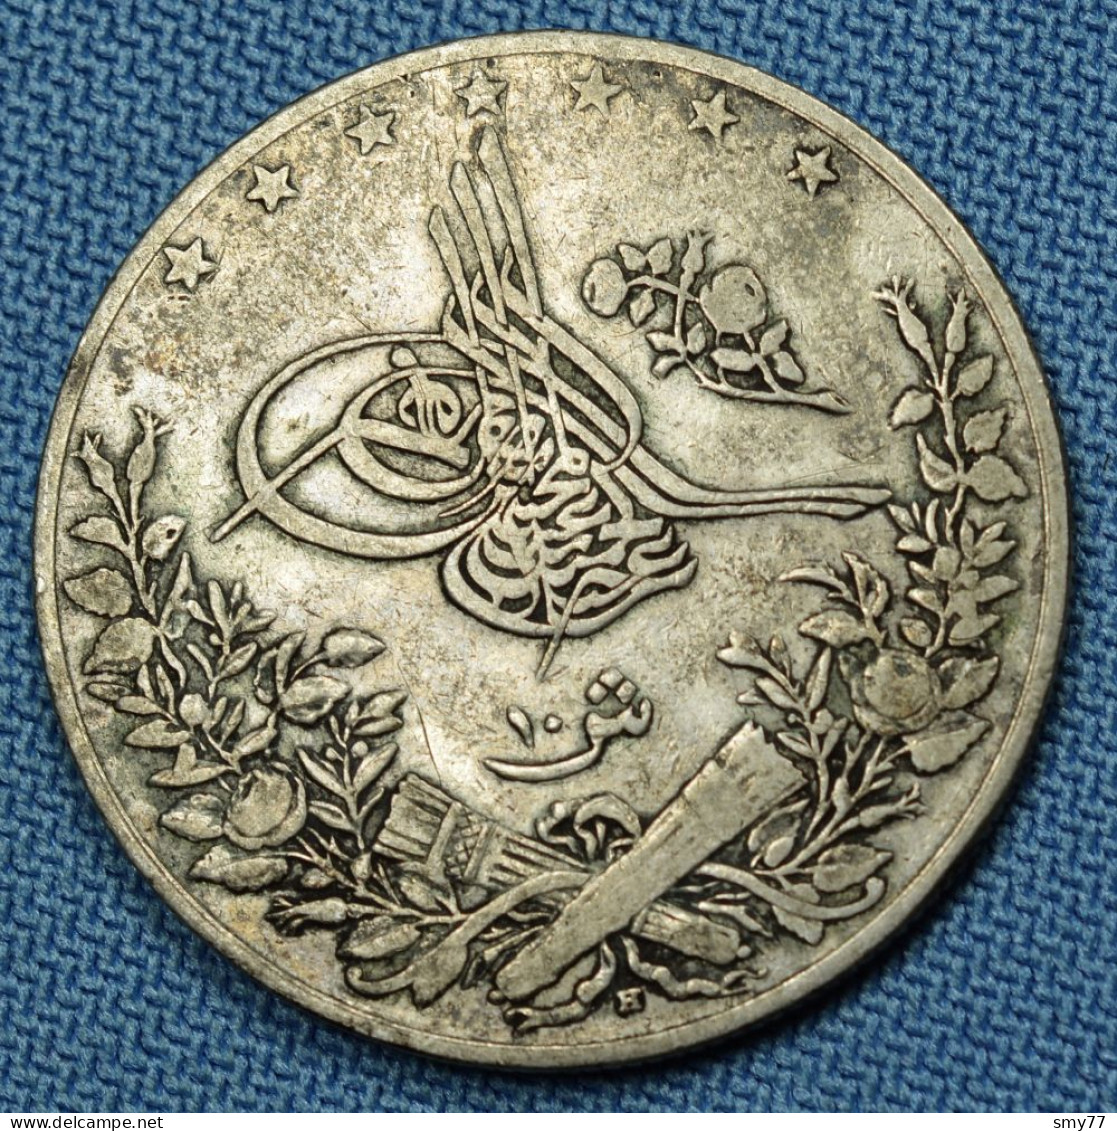 Egypt / Égypte • 10 Qirsh 1904 • Abdul Hamid II • Silver 833‰ • (٣٠  1293) •  [24-403] - Egypte